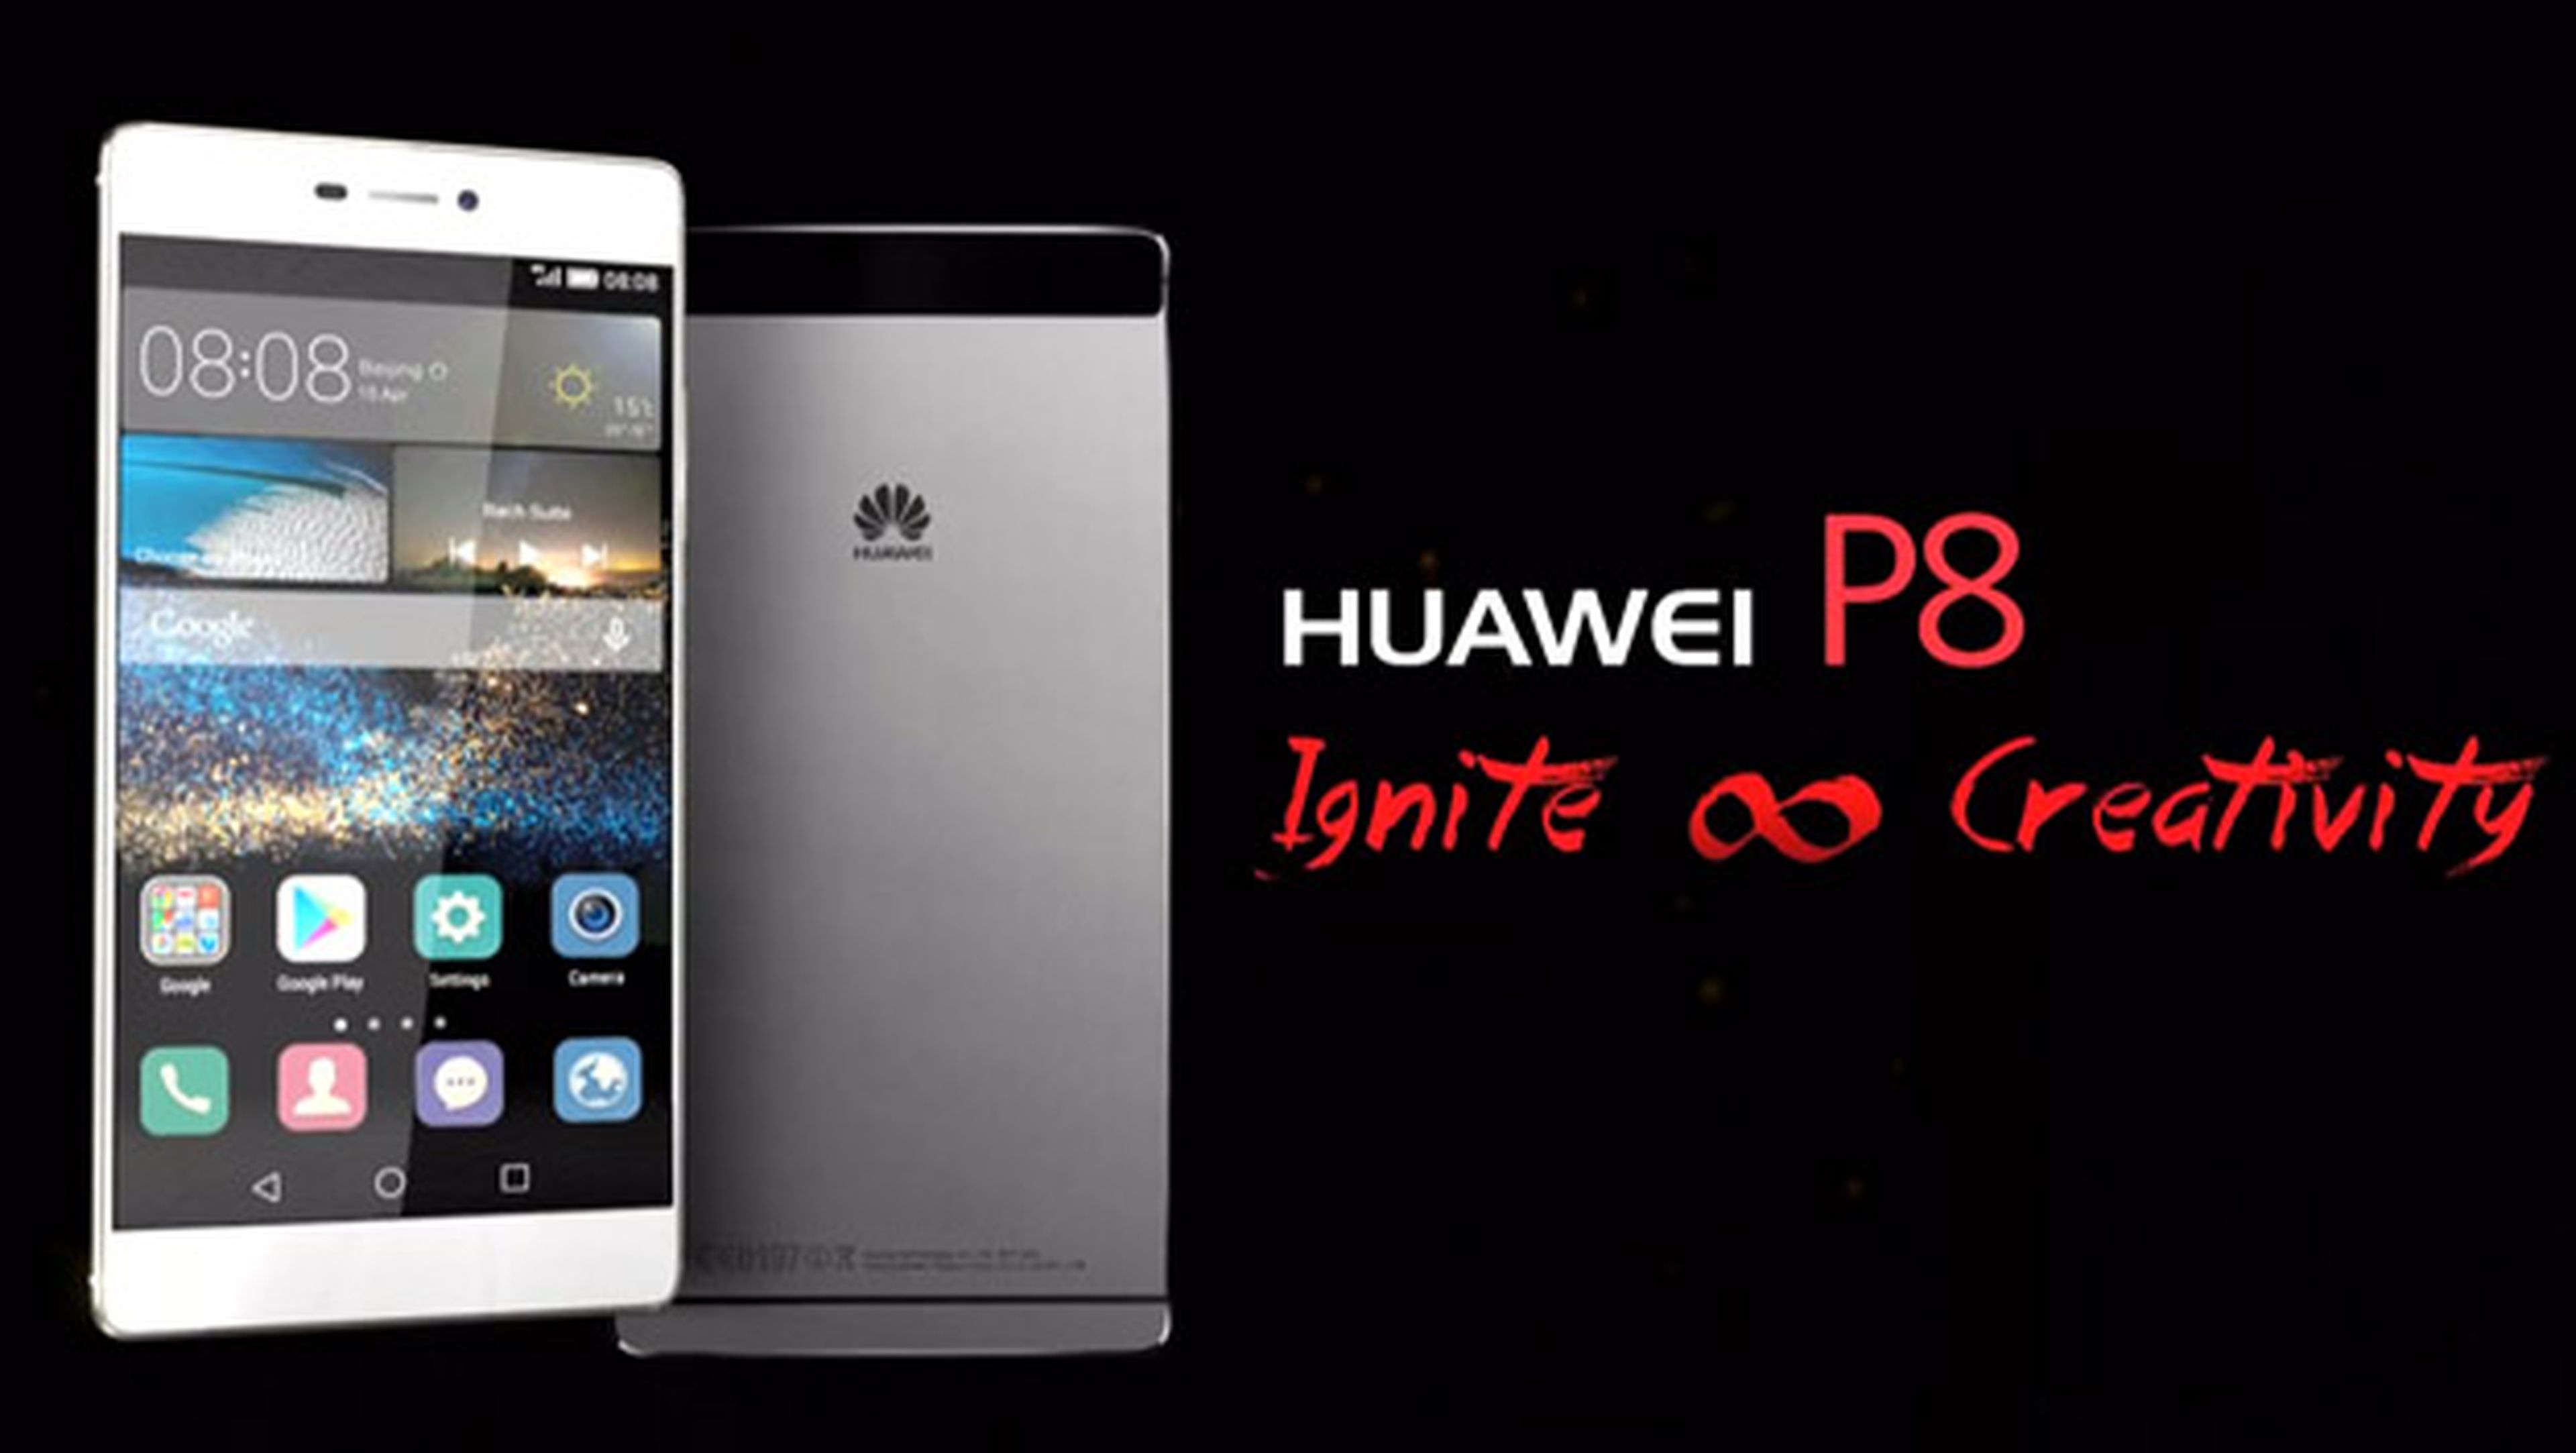 Así es el nuevo móvil Huawei P8 presentado hoy